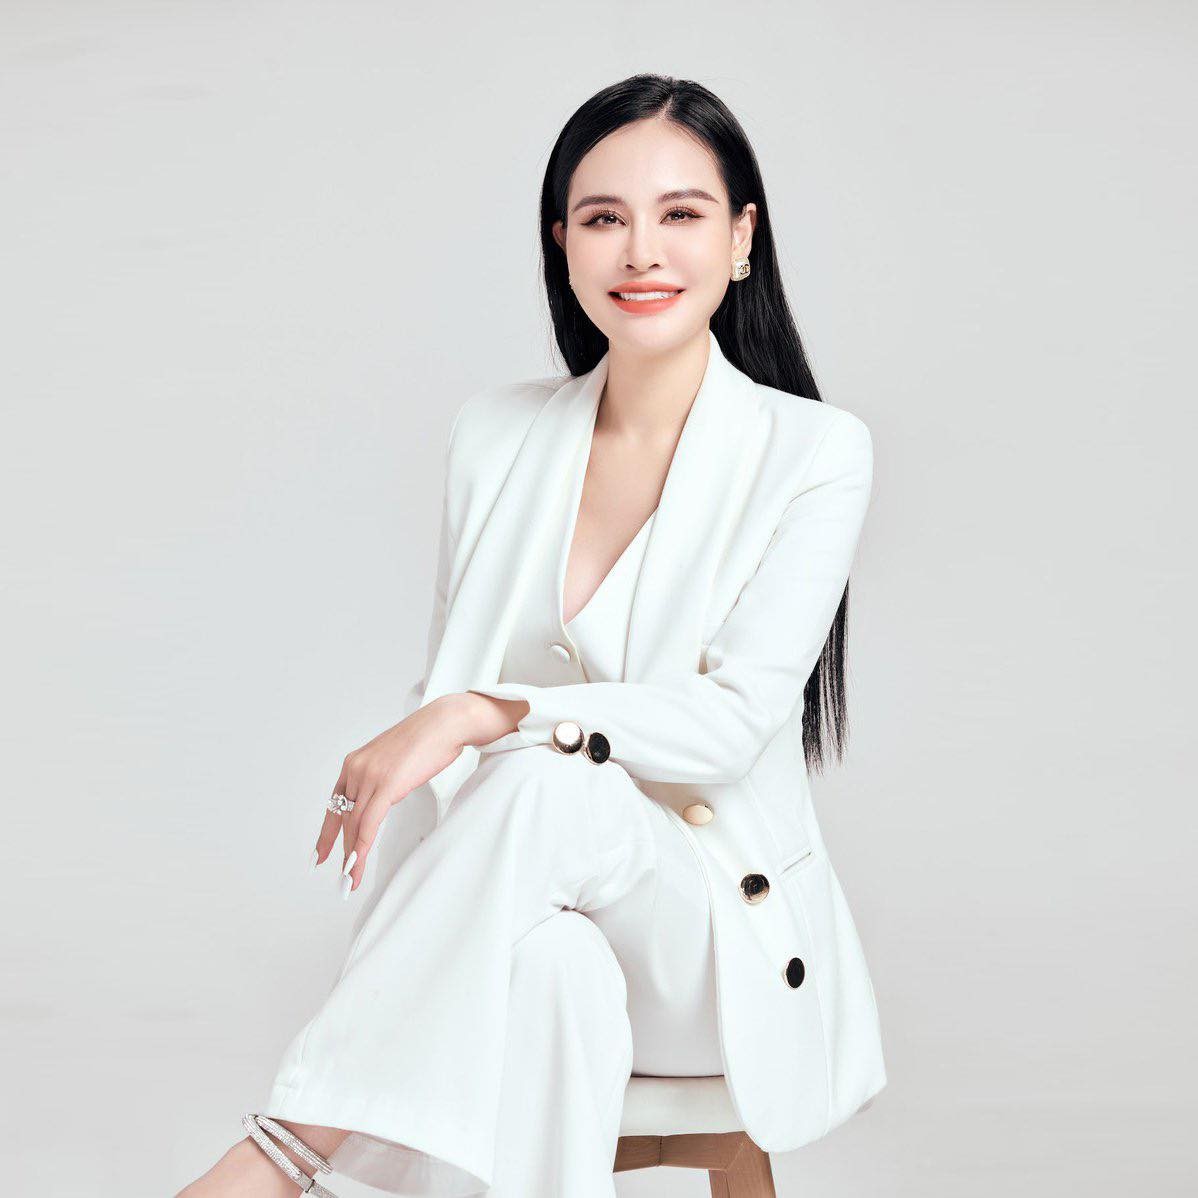 CEO Nguyễn Hằng chia sẻ “chìa khoá” khởi nghiệp thành công - ảnh 1